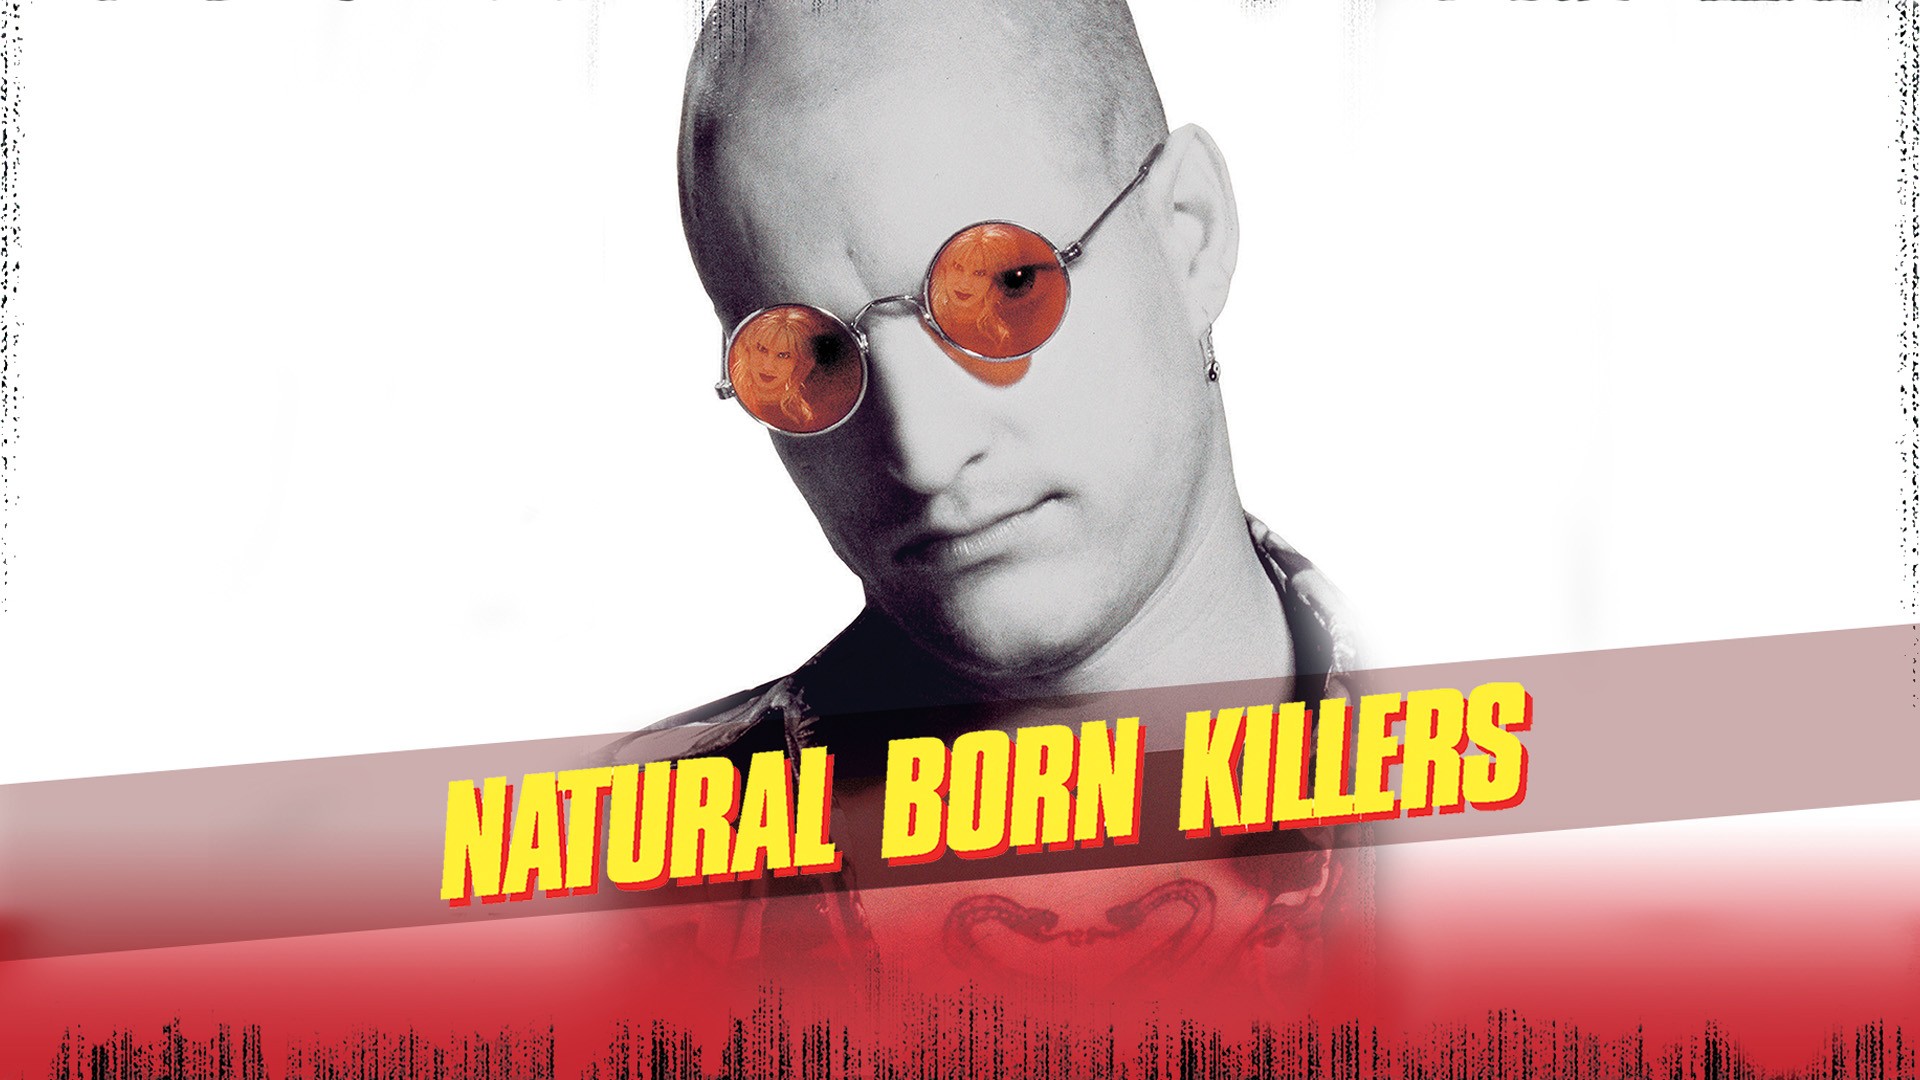 Assassinos por Natureza DVD